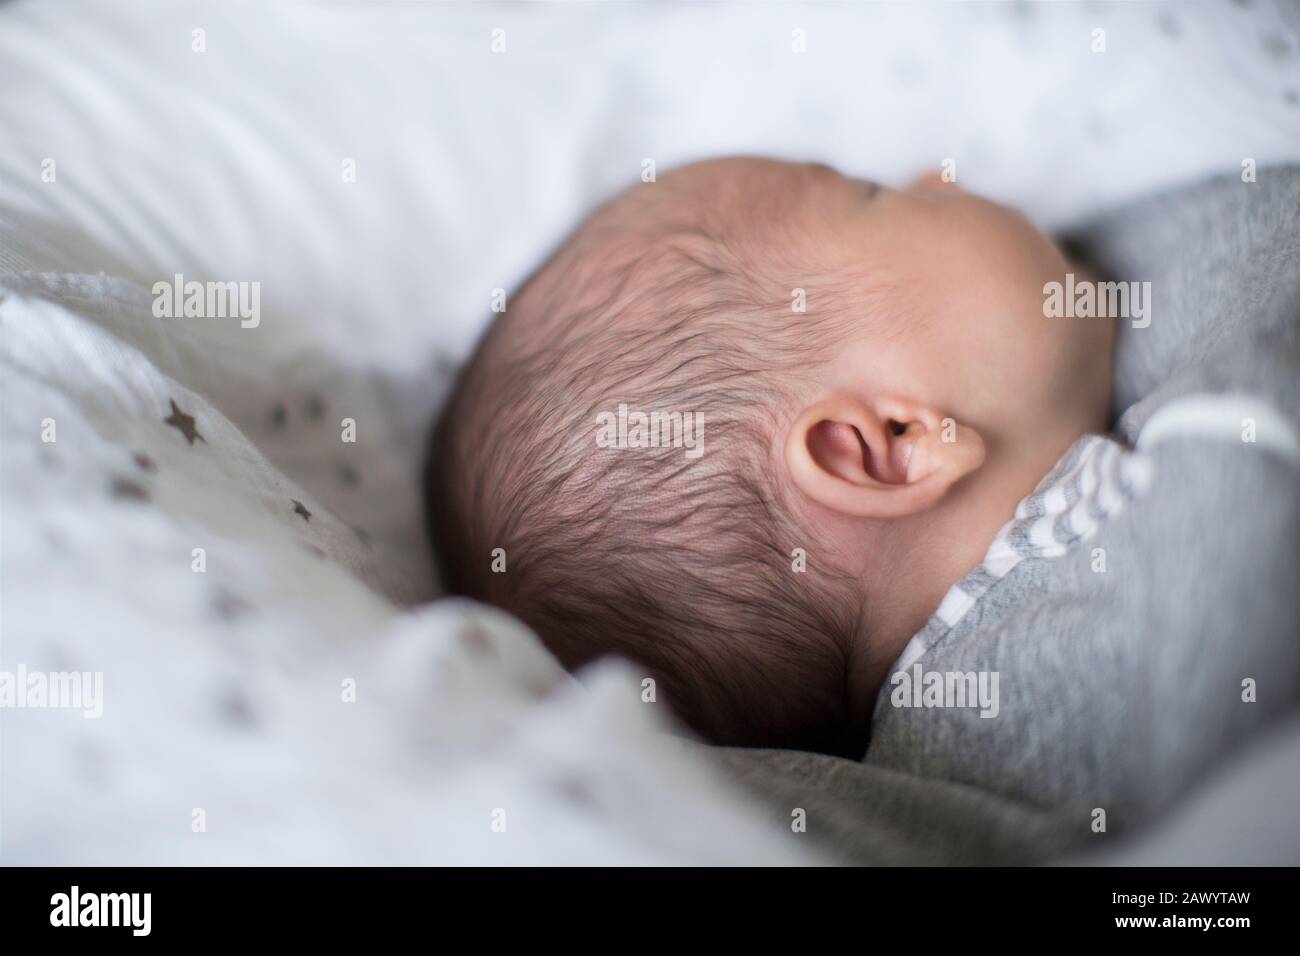 Nahaufnahme des unschuldigen neugeborenen Jungen, der schläft Stockfoto